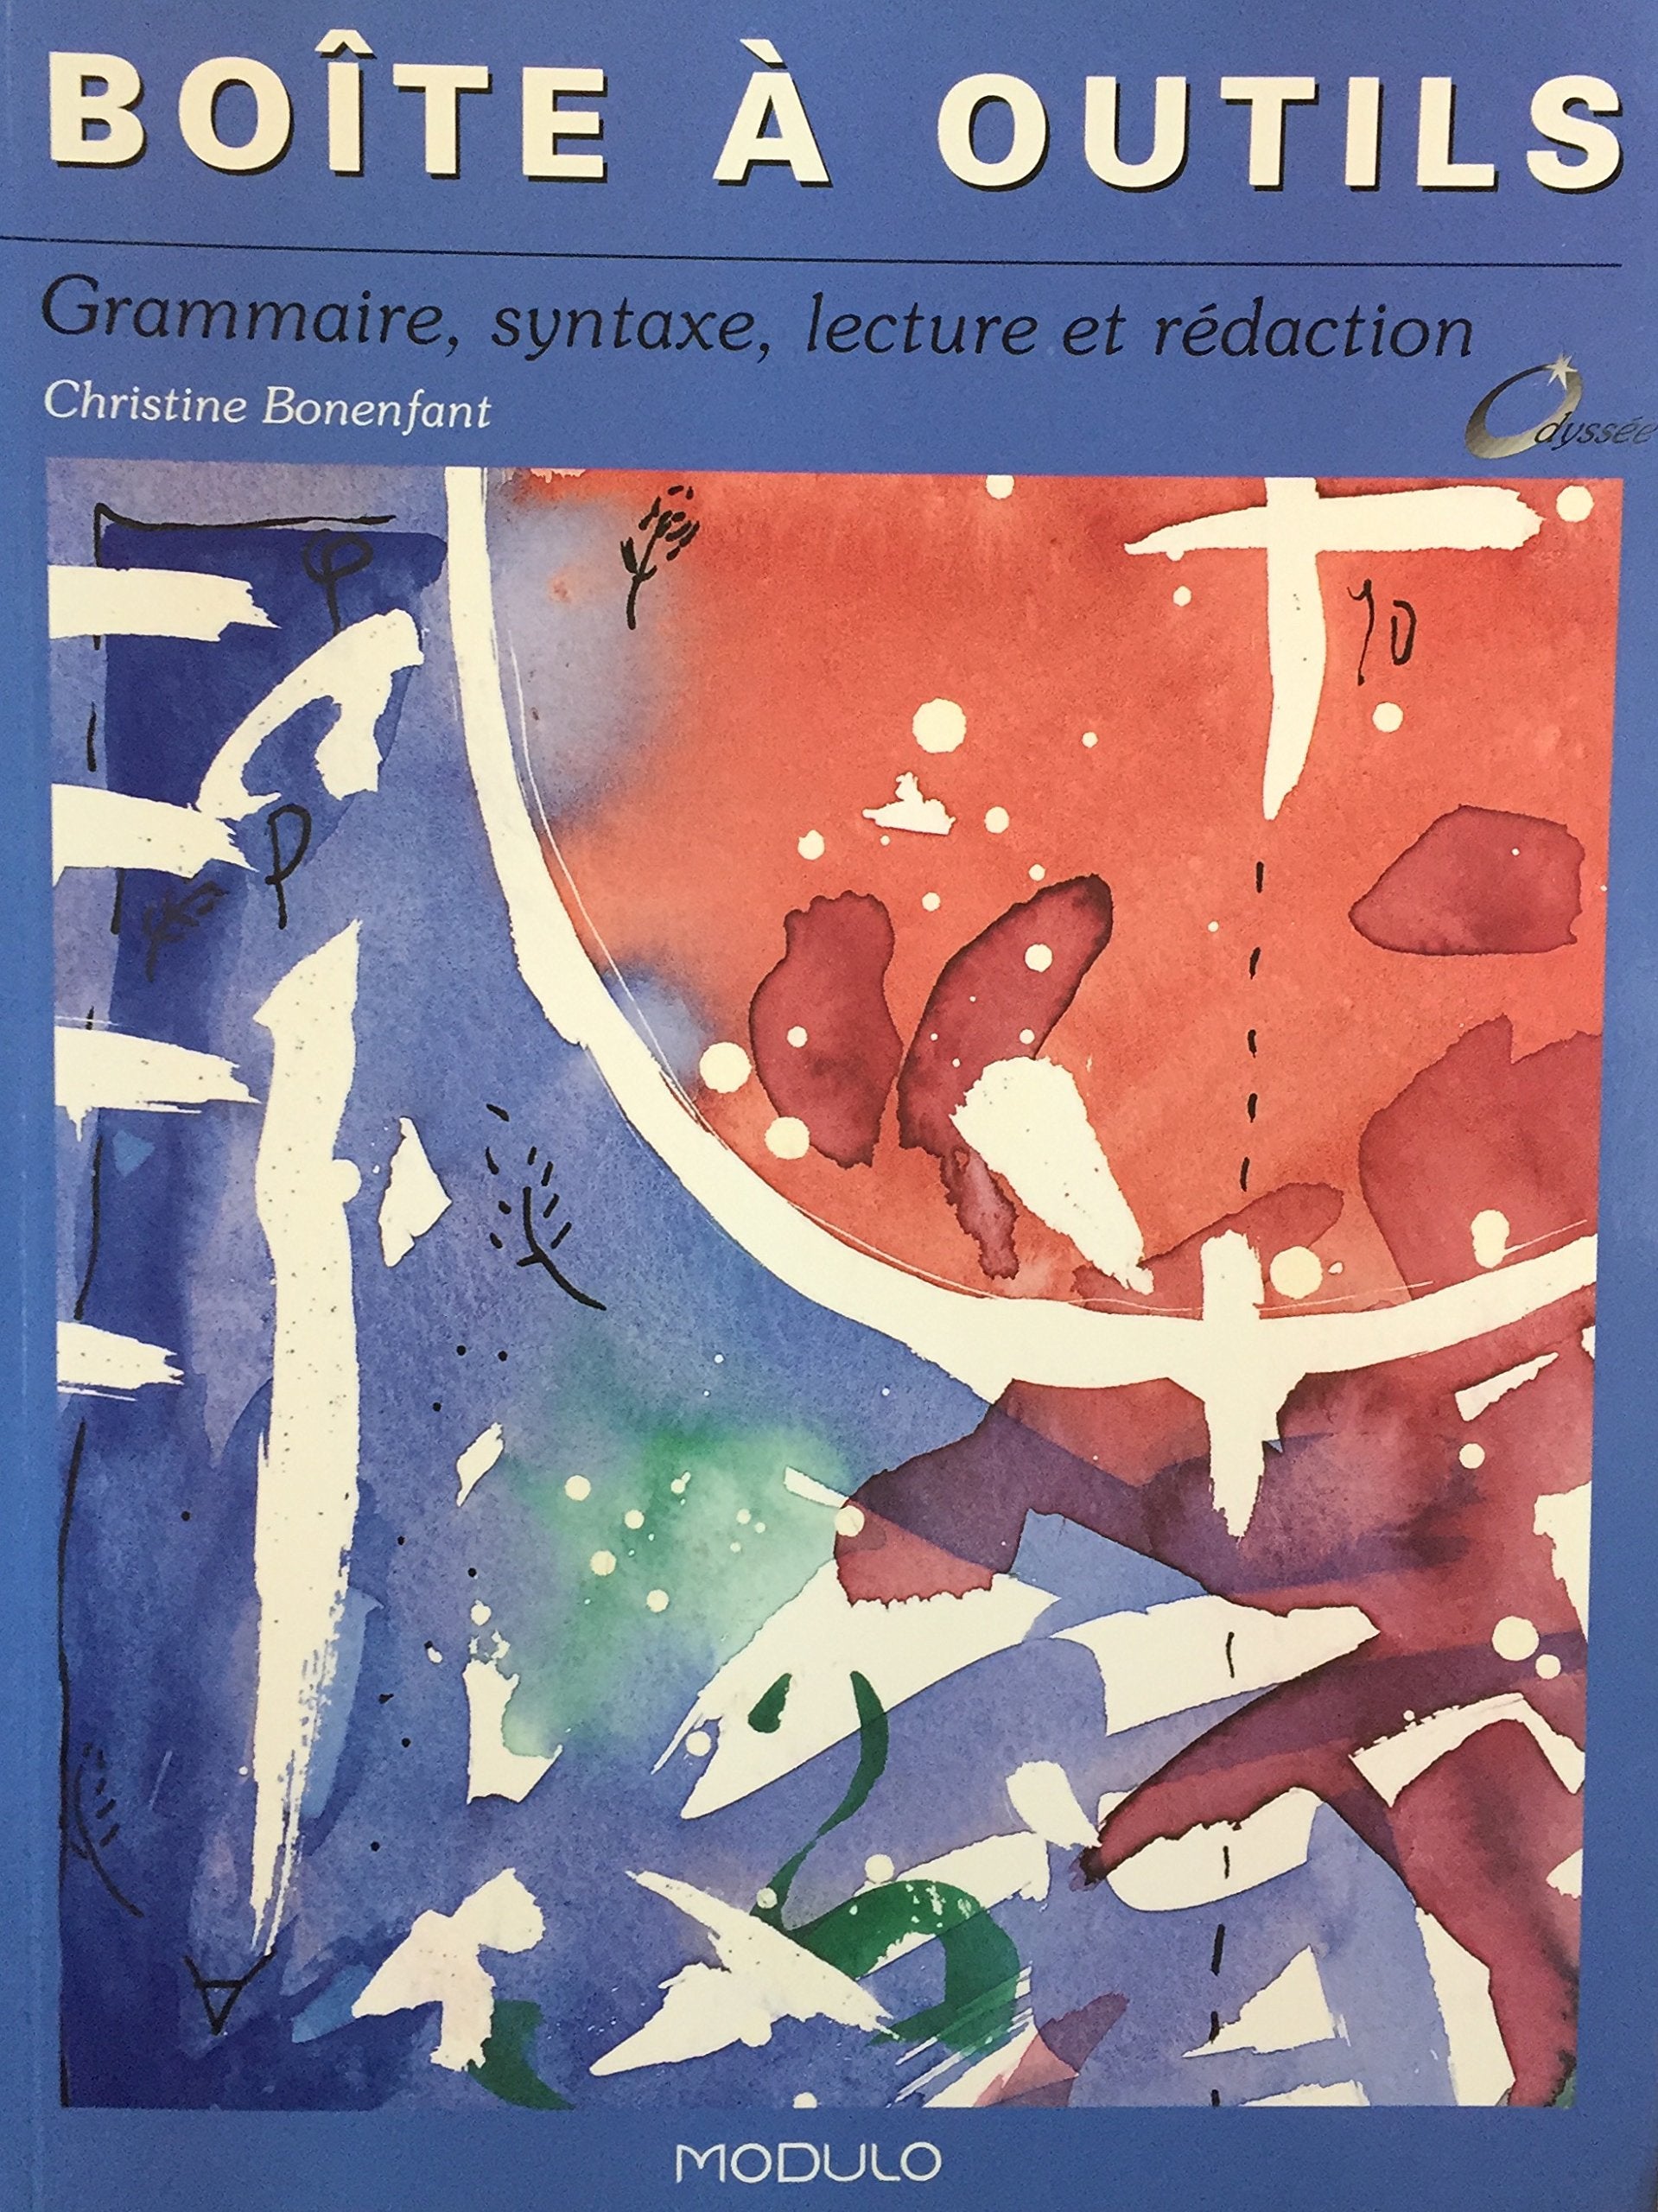 Livre ISBN 2891138910 Boîte à outils : grammaire, syntaxe, lecture et rédaction (Christine Bonenfant)